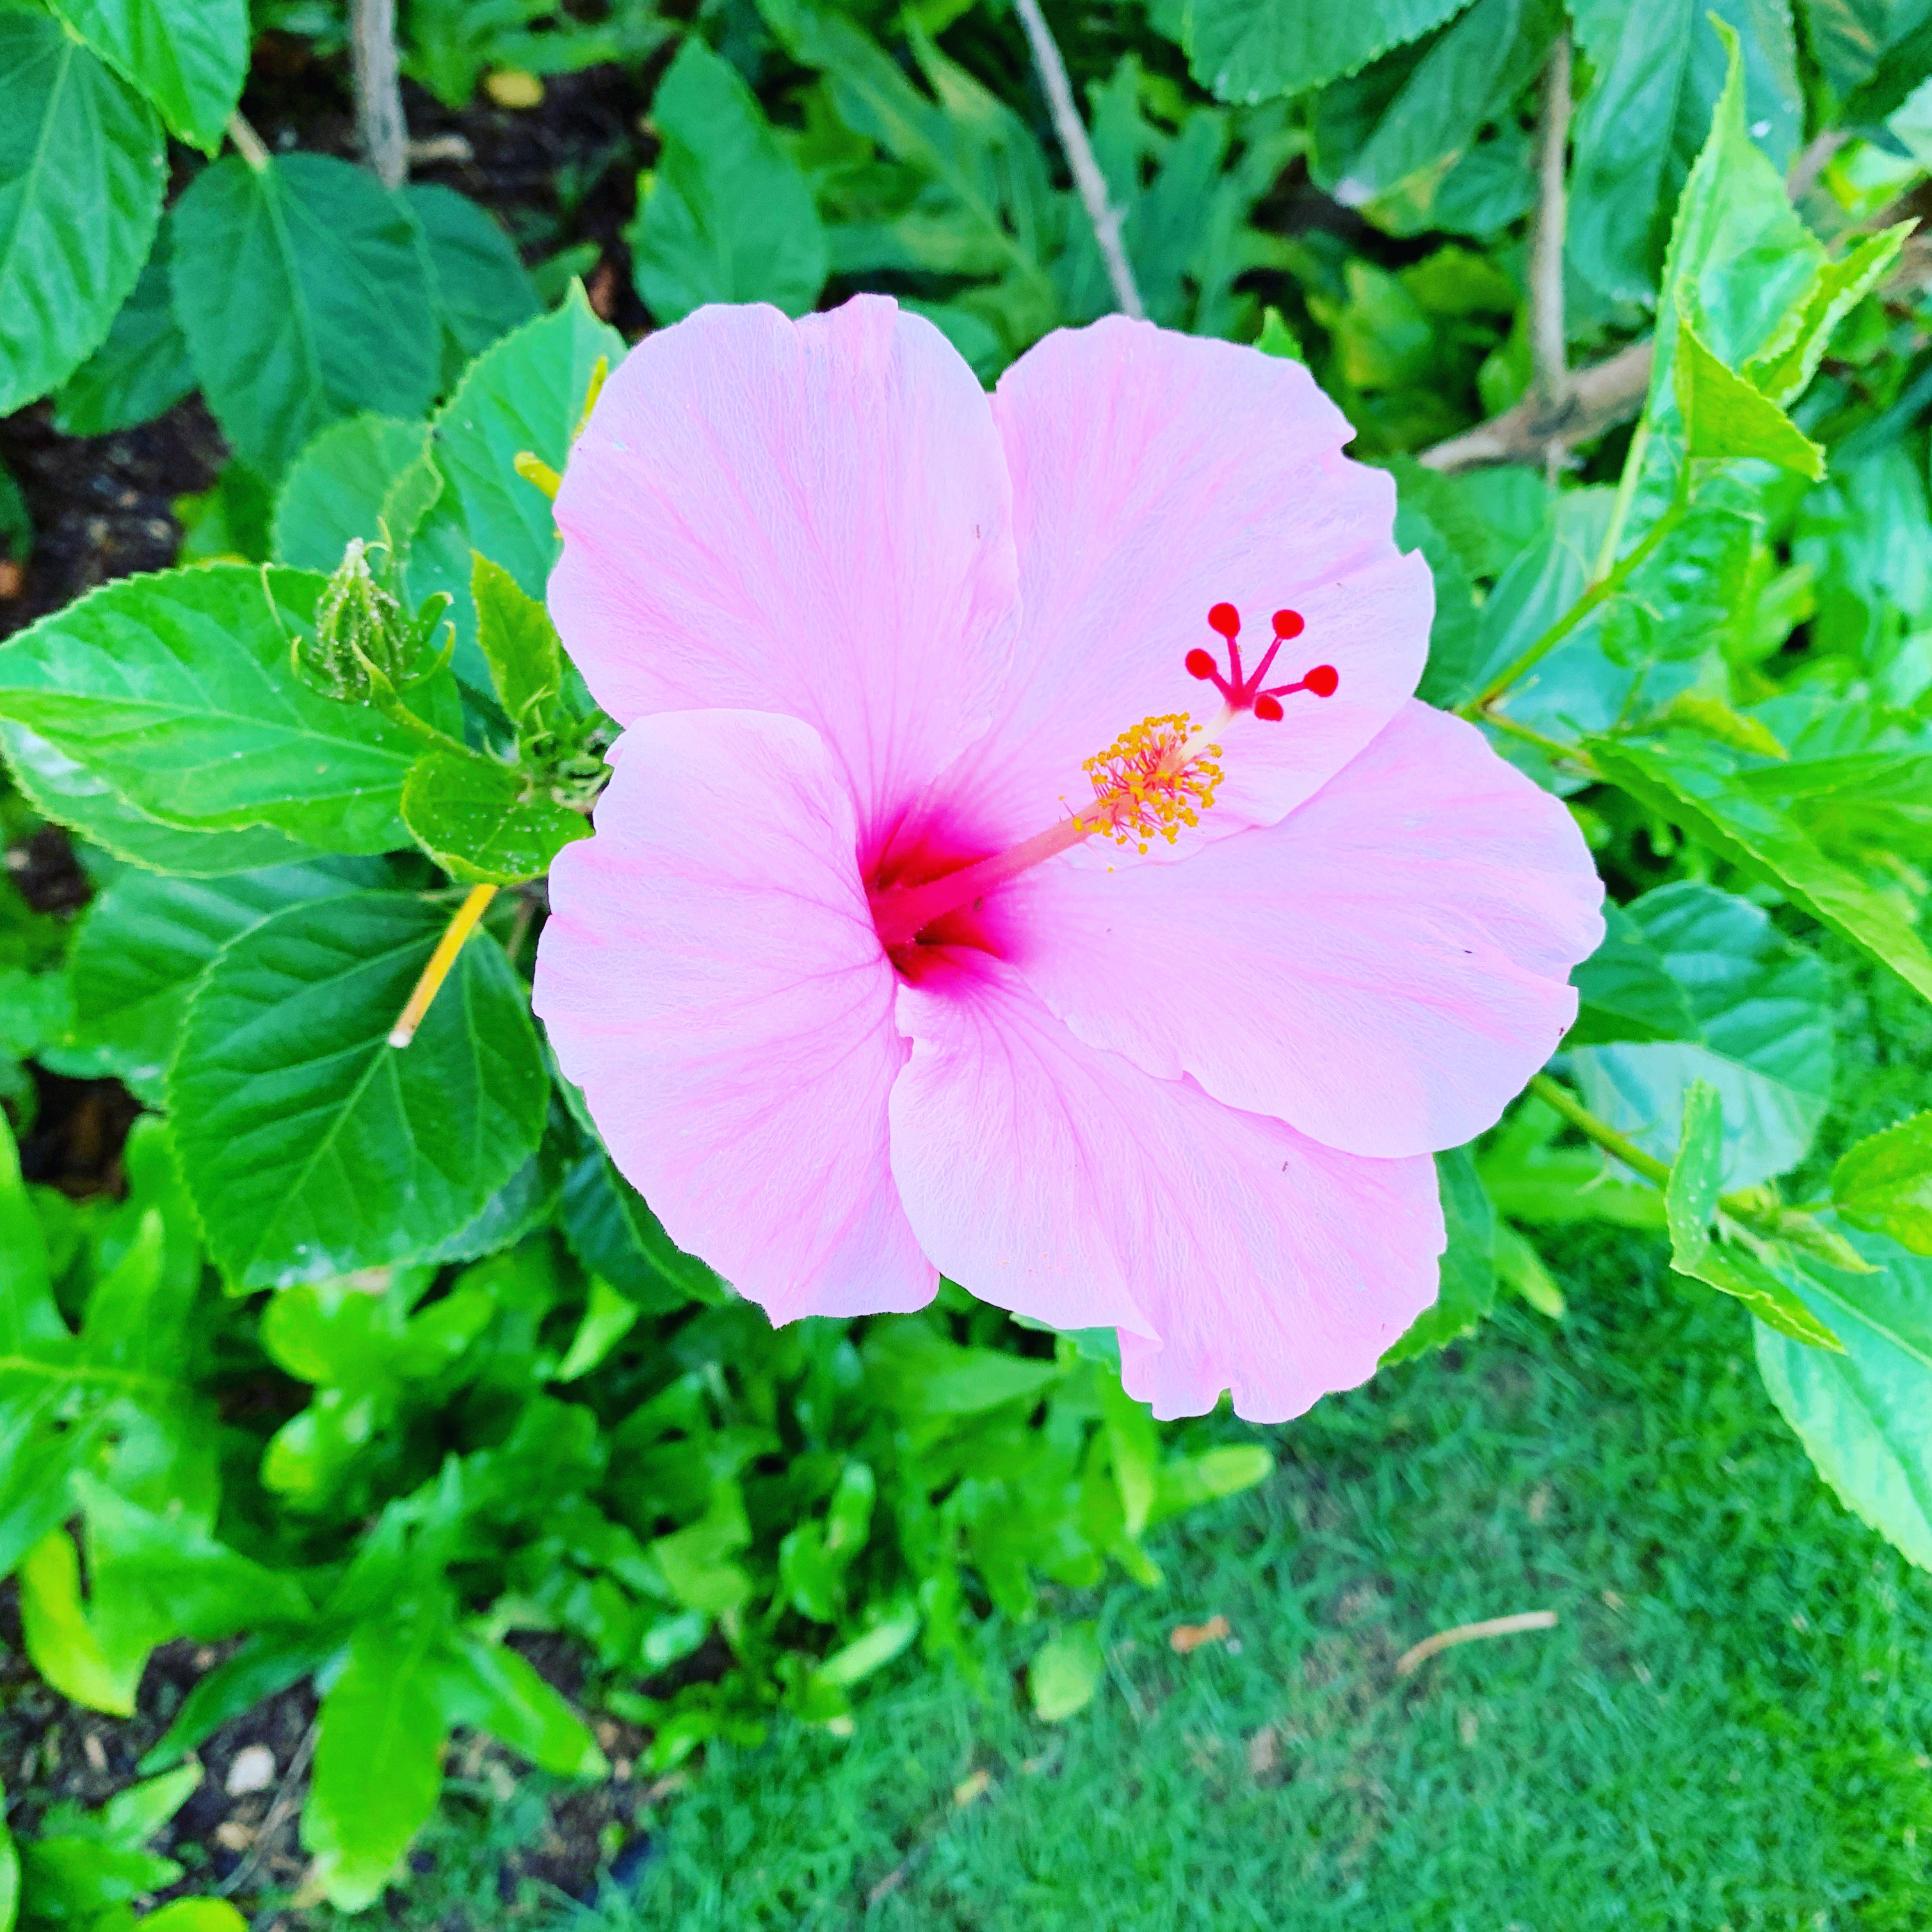 Jtb Great Aloha 10 今日はハワイの花図鑑から南国の花として人気のハイビスカスをお届け 花言葉は 繊細な美 色によって意味が変わります 赤は 勇敢 新しい美 ピンクは 華やか 黄色は 輝き 皆さんは何色がお好きですか オリオリ